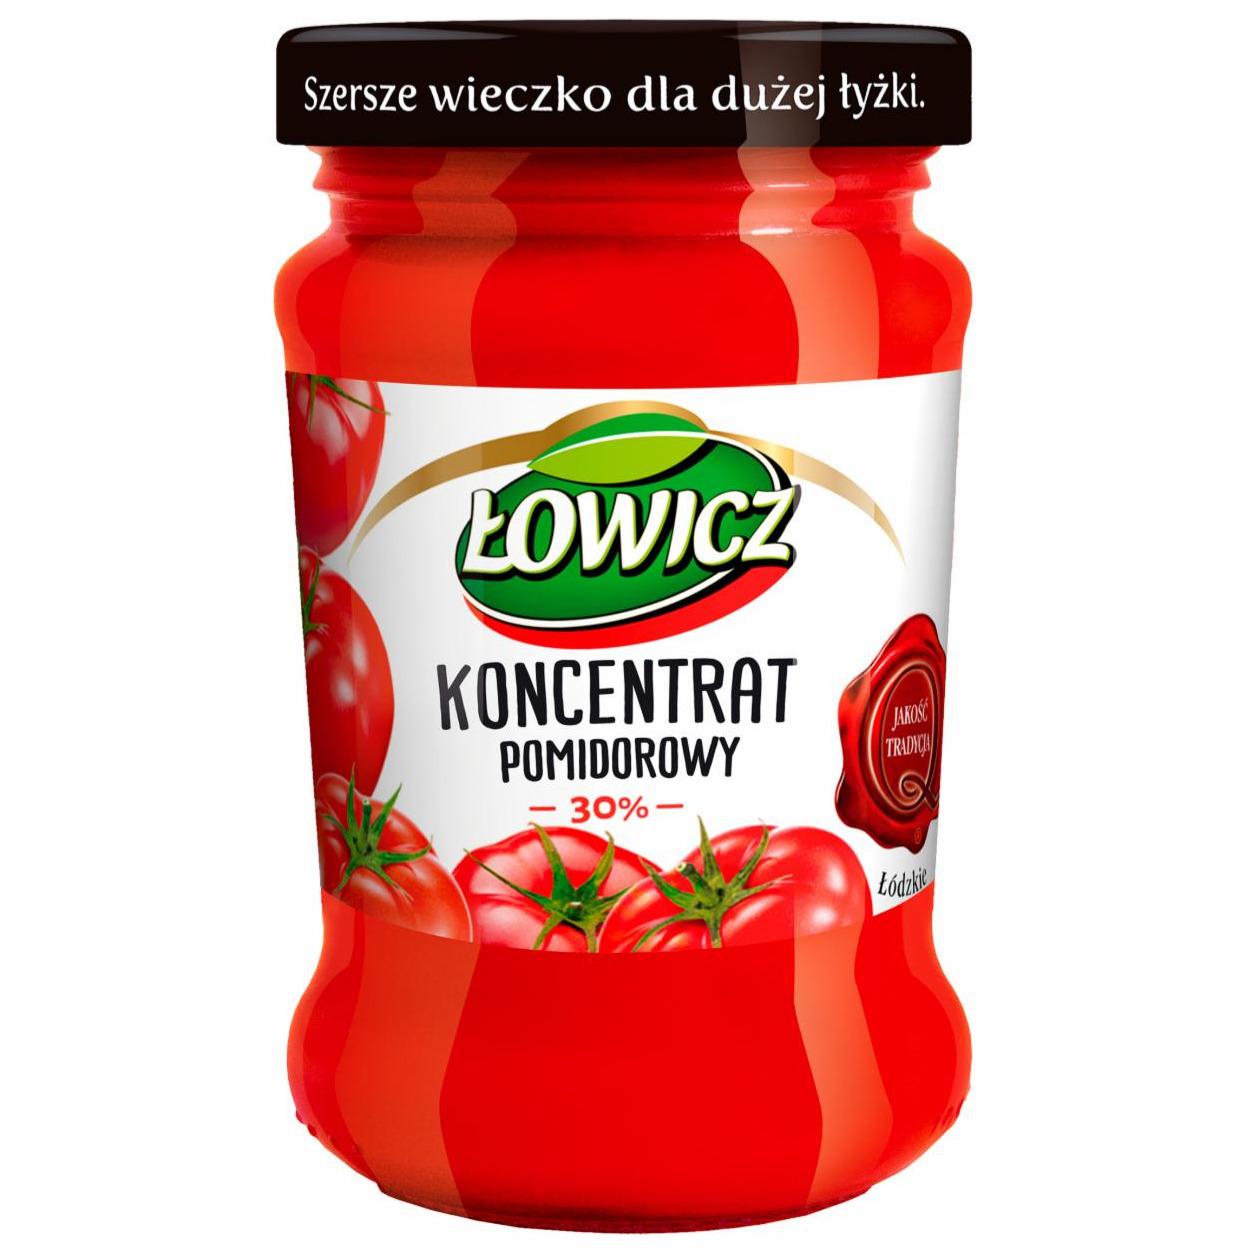 Zdjęcia - Łowicz Koncentrat pomidorowy 190 g